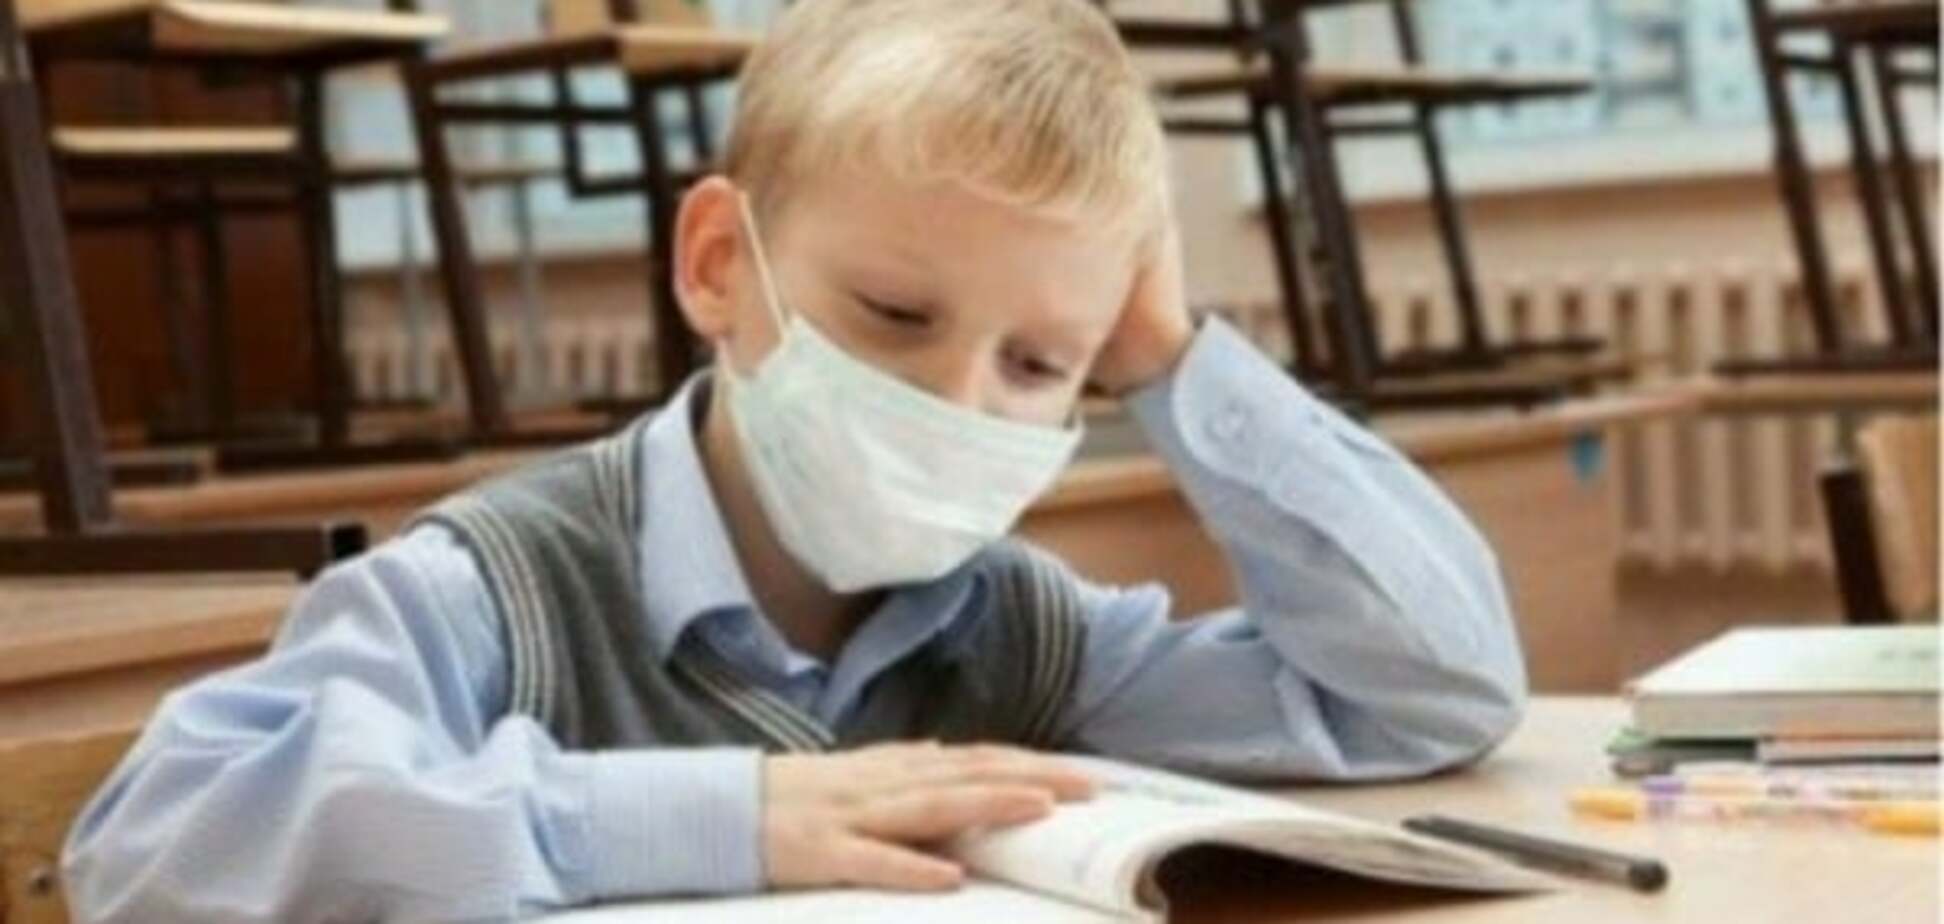 Епідемія грипу: СЕС готує погану новину для школярів